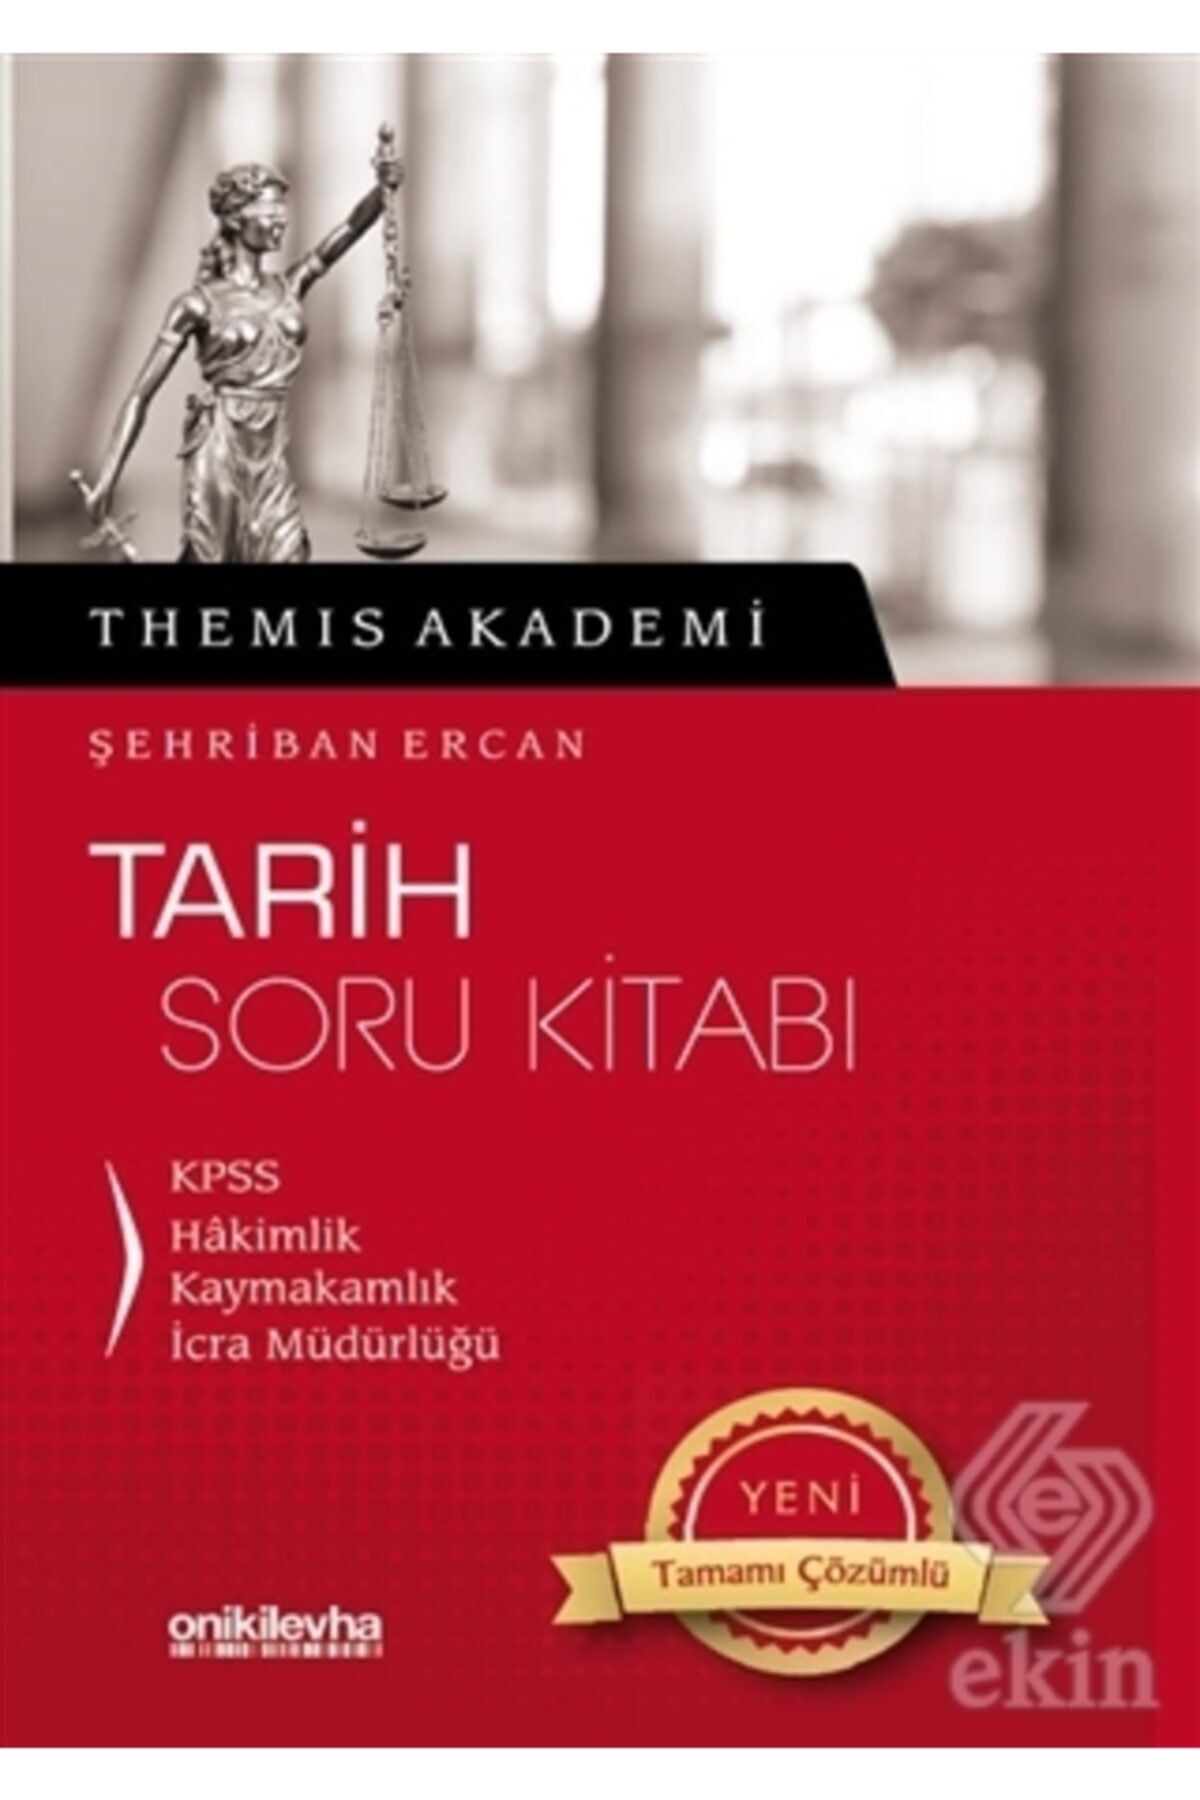 On İki Levha Yayıncılık Themis Akademi Tarih Soru Kitabı